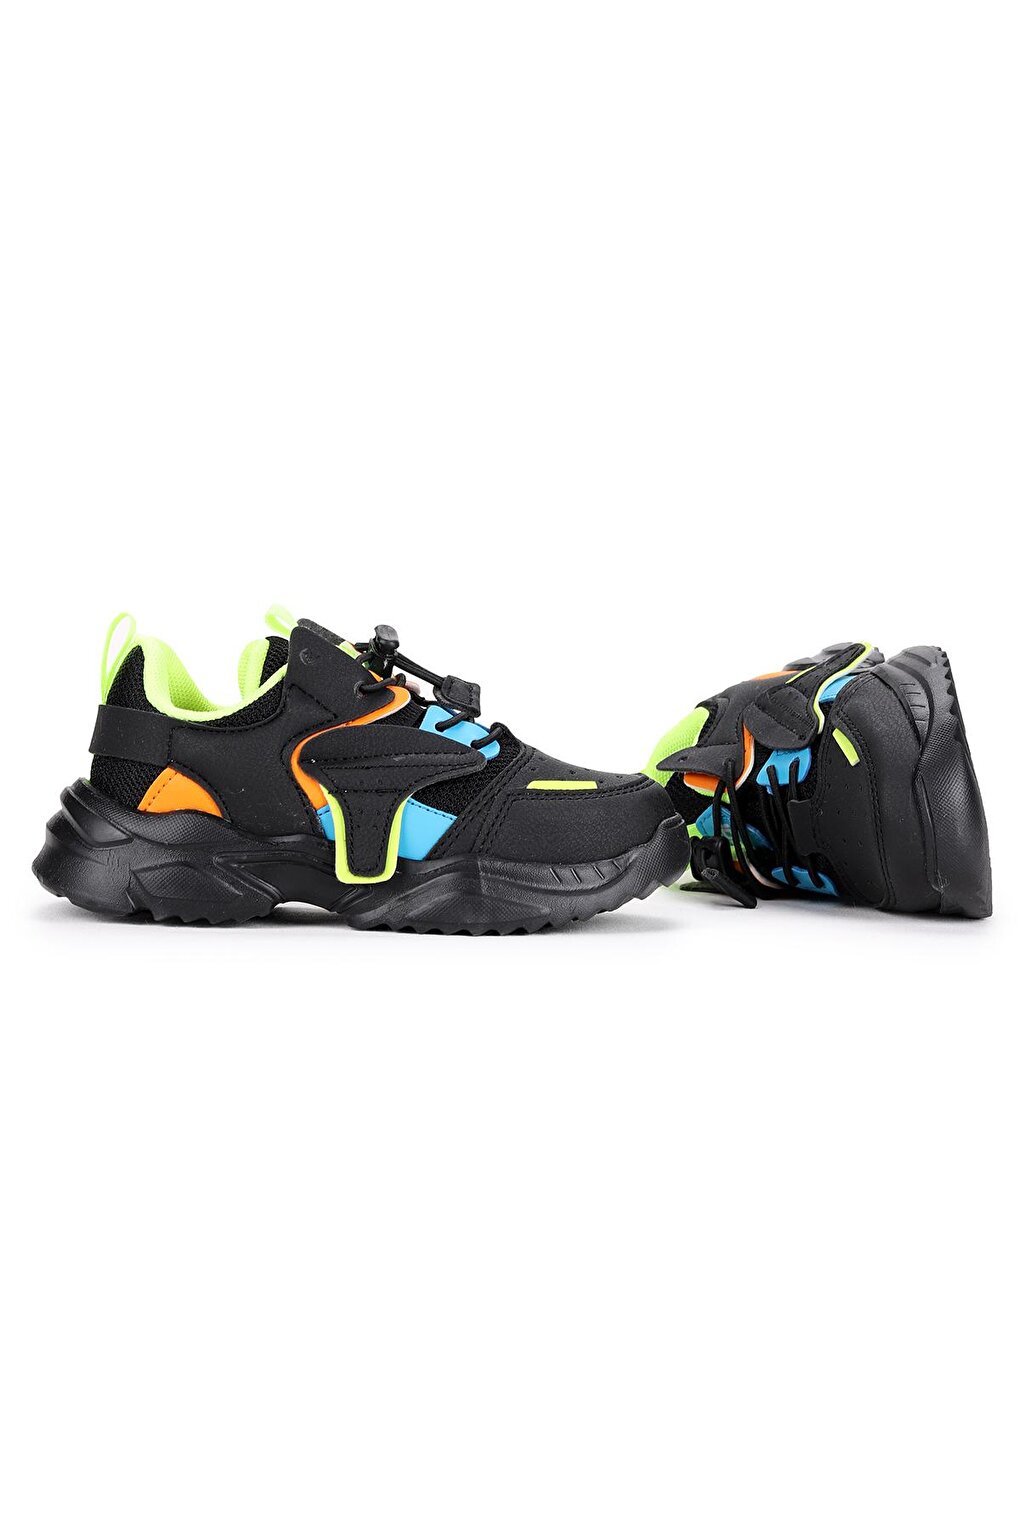 Спортивная обувь на липучке Y3 для девочек и мальчиков KİKO KİDS, черный